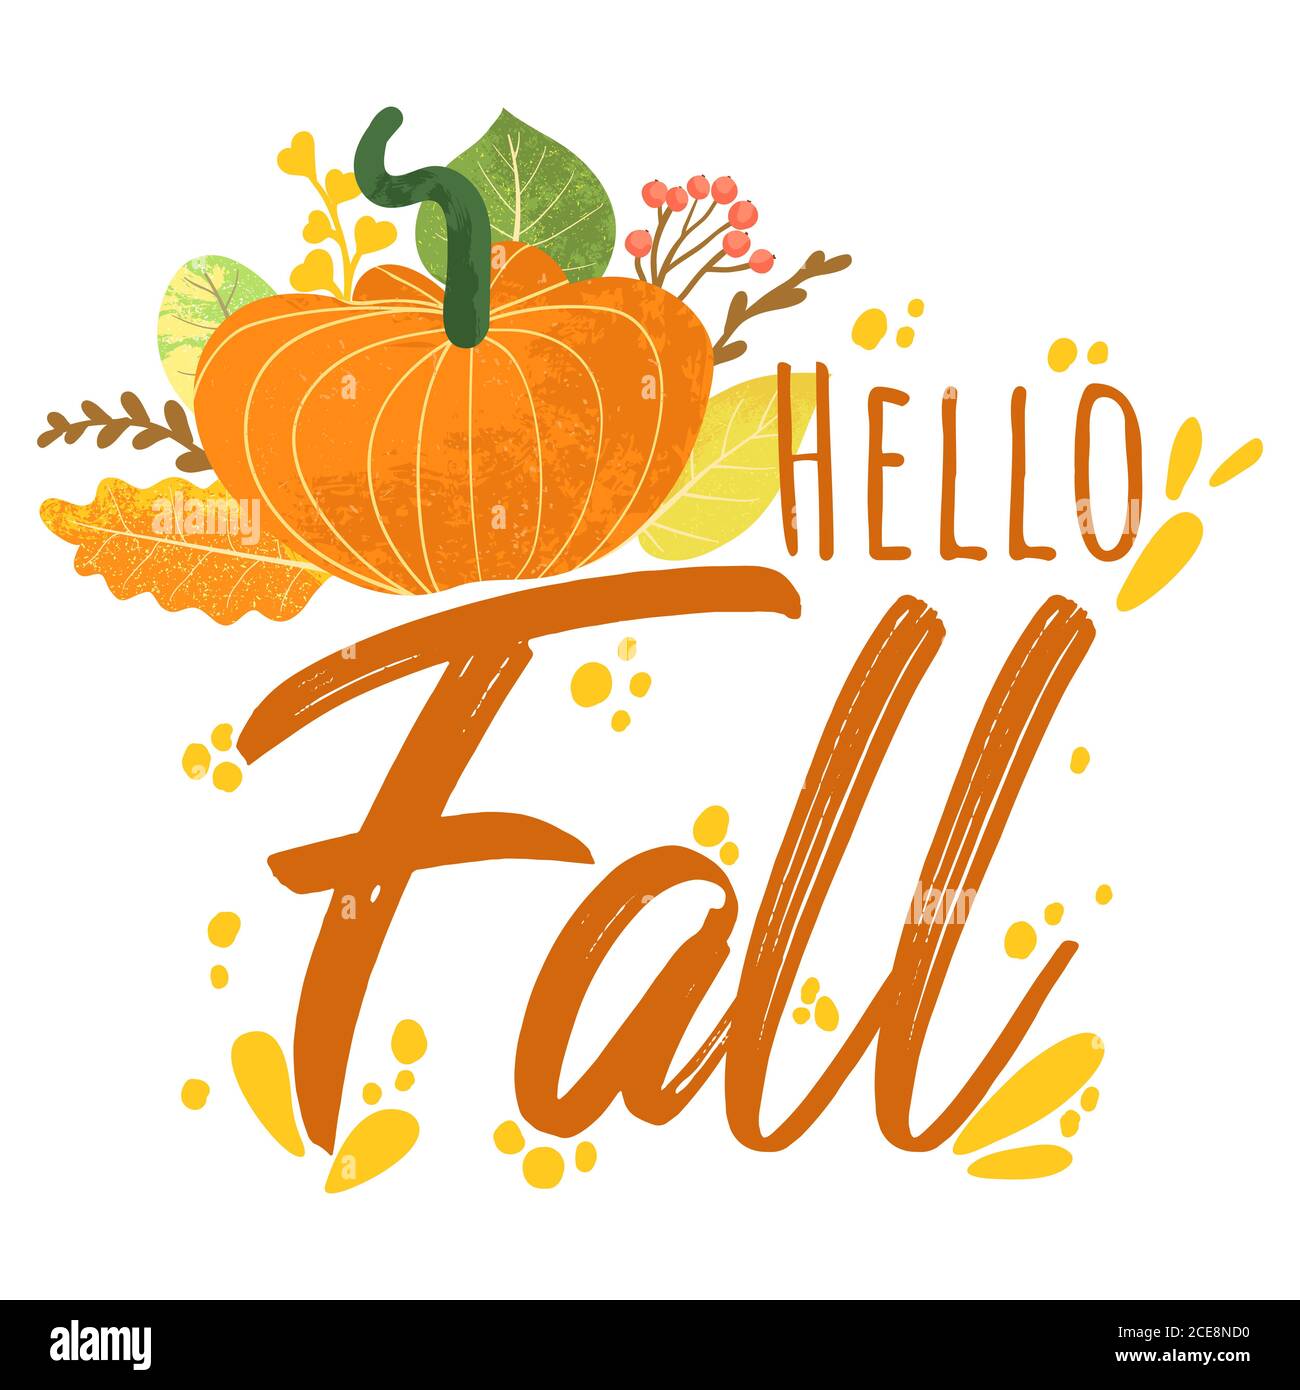 Hello Fall - Autumn Typography Zitate mit Herbstelementen. Vektor-Zitate mit Herbstblättern, Zweig, Kürbis und Beeren. Isoliert auf weißem Backgro Stock Vektor